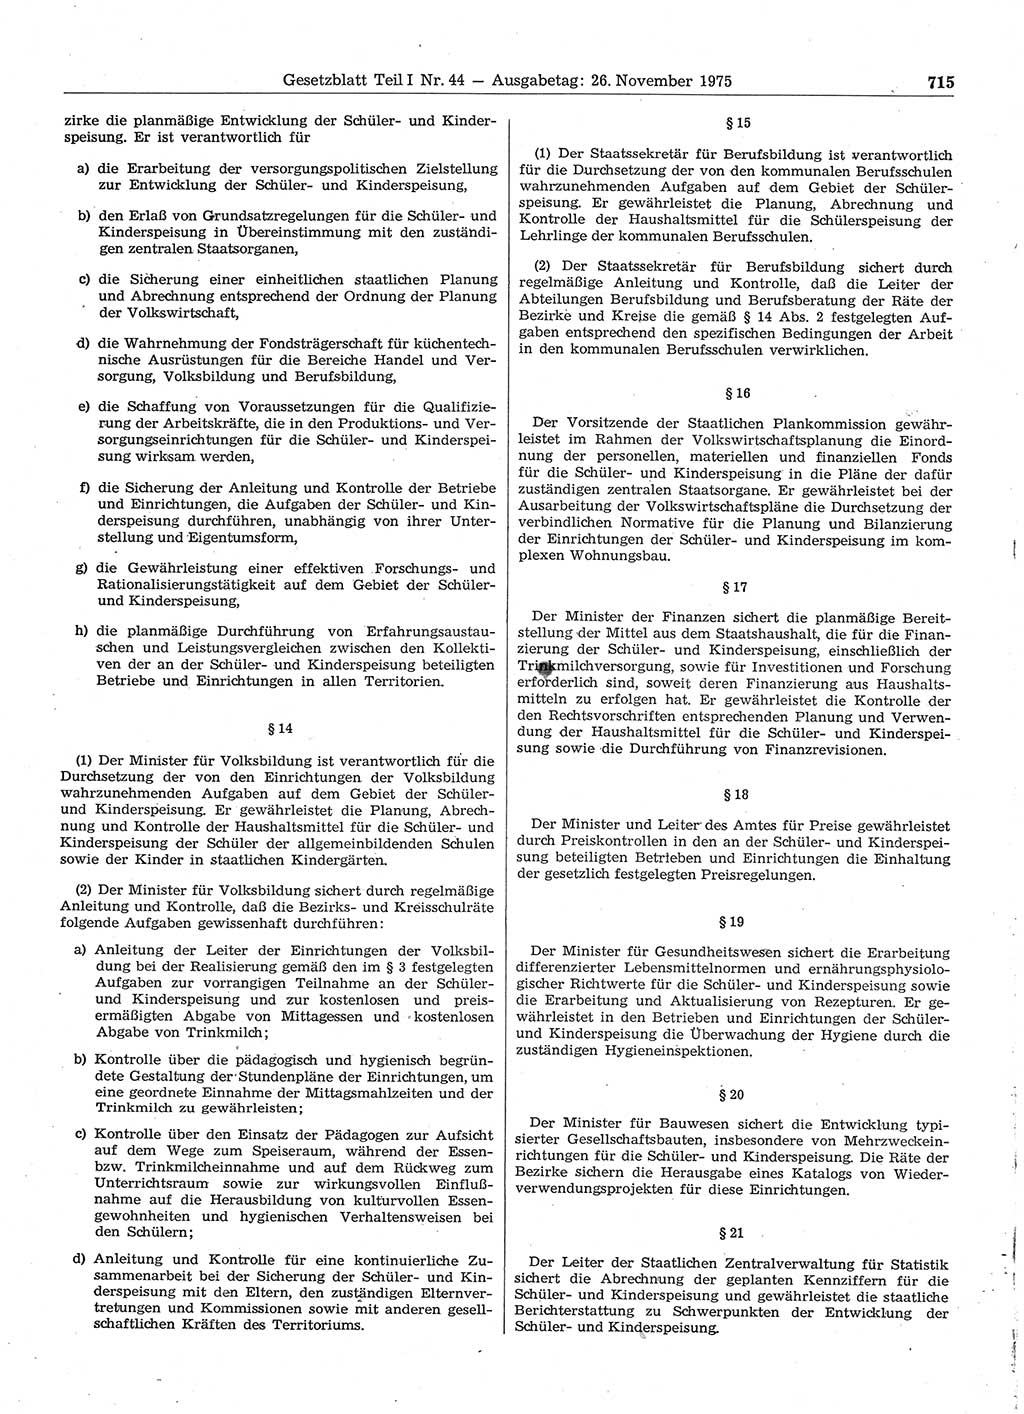 Gesetzblatt (GBl.) der Deutschen Demokratischen Republik (DDR) Teil Ⅰ 1975, Seite 715 (GBl. DDR Ⅰ 1975, S. 715)